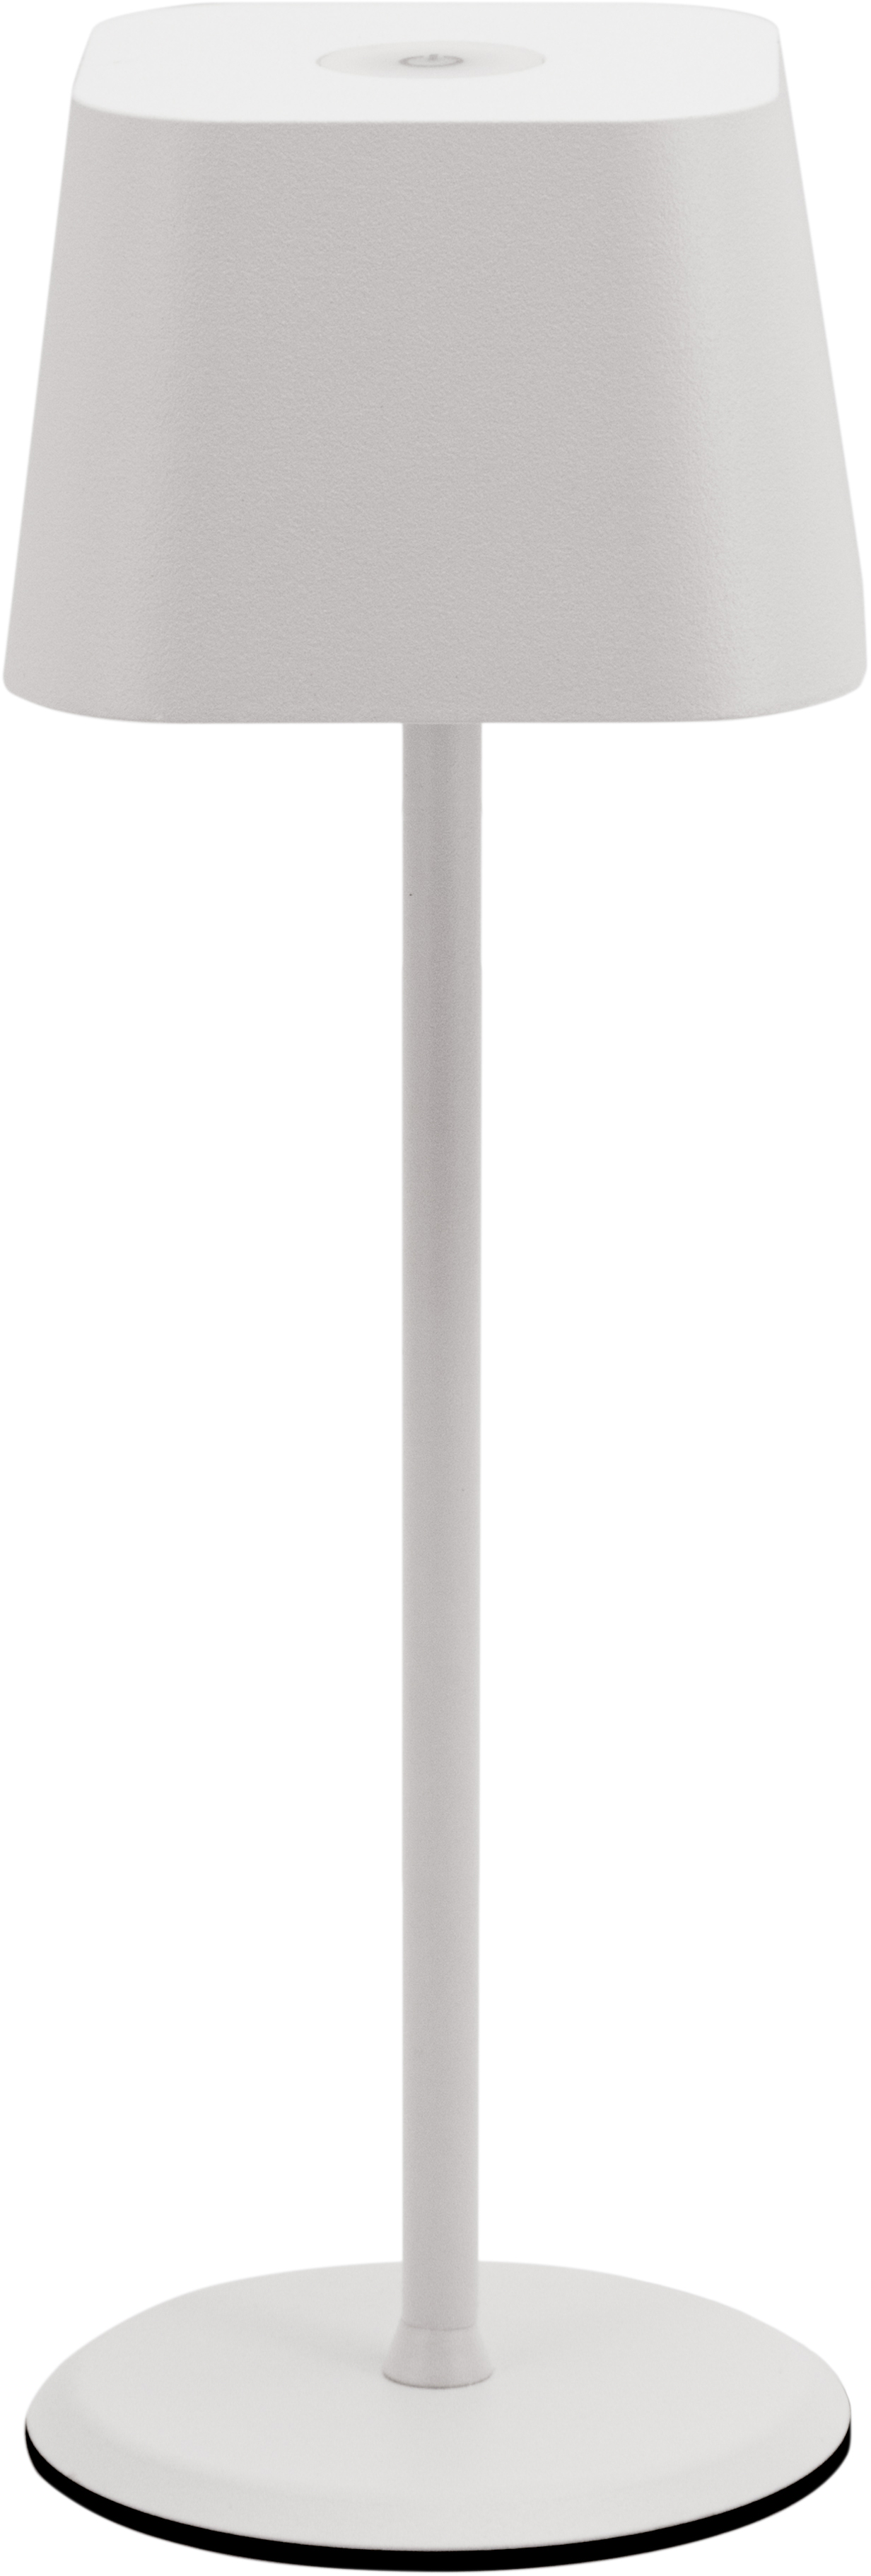 SECURIT Lampe de table MALTE LP-MT-WT blanc, batterie, dimmable